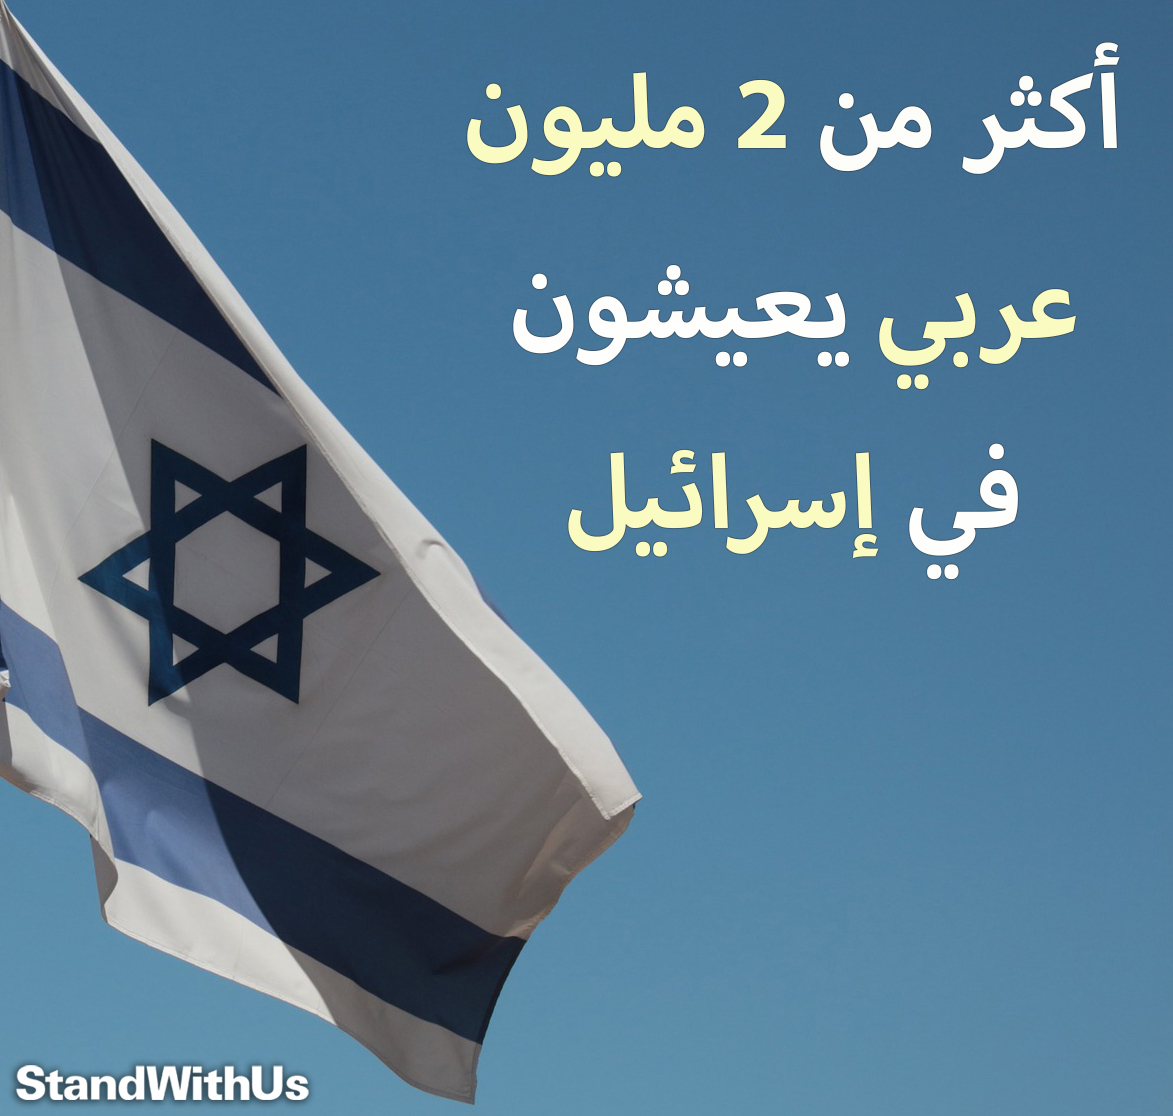 من بين 9.5 مليون نسمة تعداد سكان دولة إسرائيل هناك أكثر من 2 مليون عربي.. هذه هي إسرائيل  ...